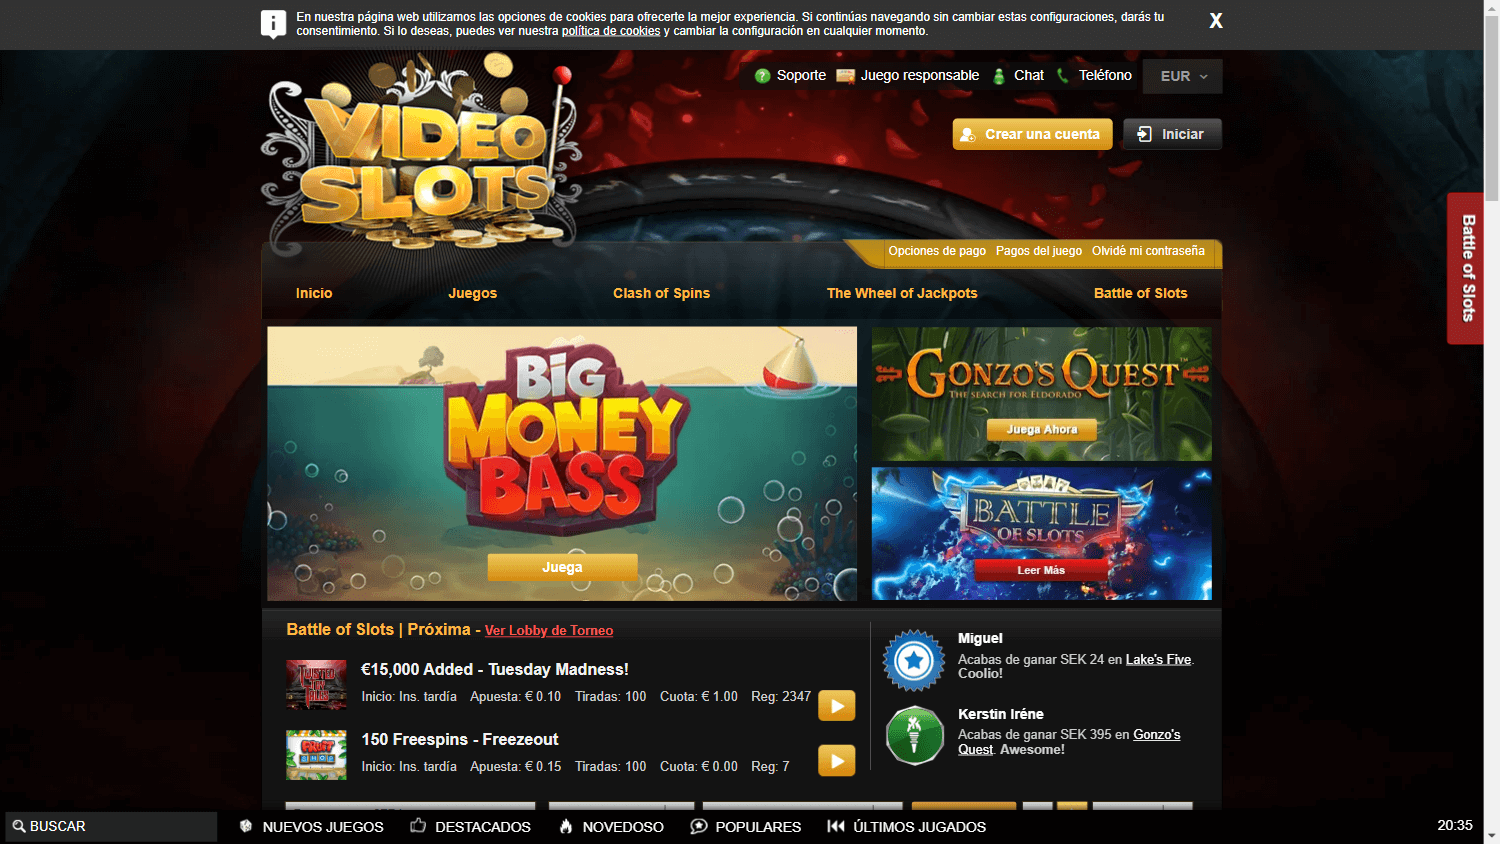 videoslots_casino_es_homepage_desktop